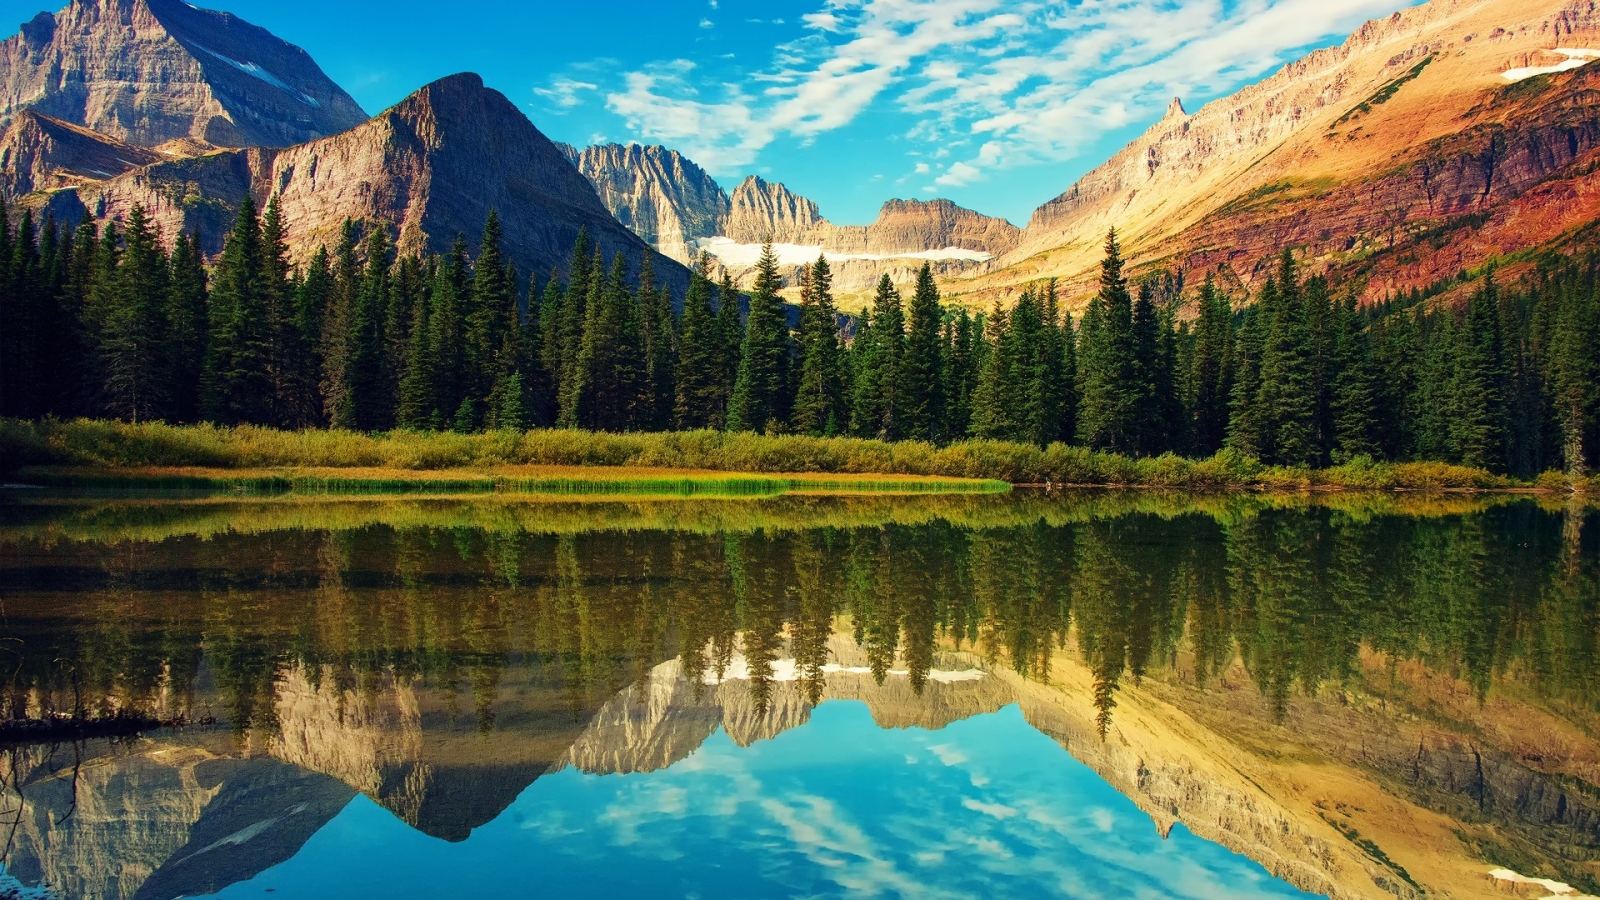 Glacier National Park Landscape for 1600 x 900 HDTV resolution